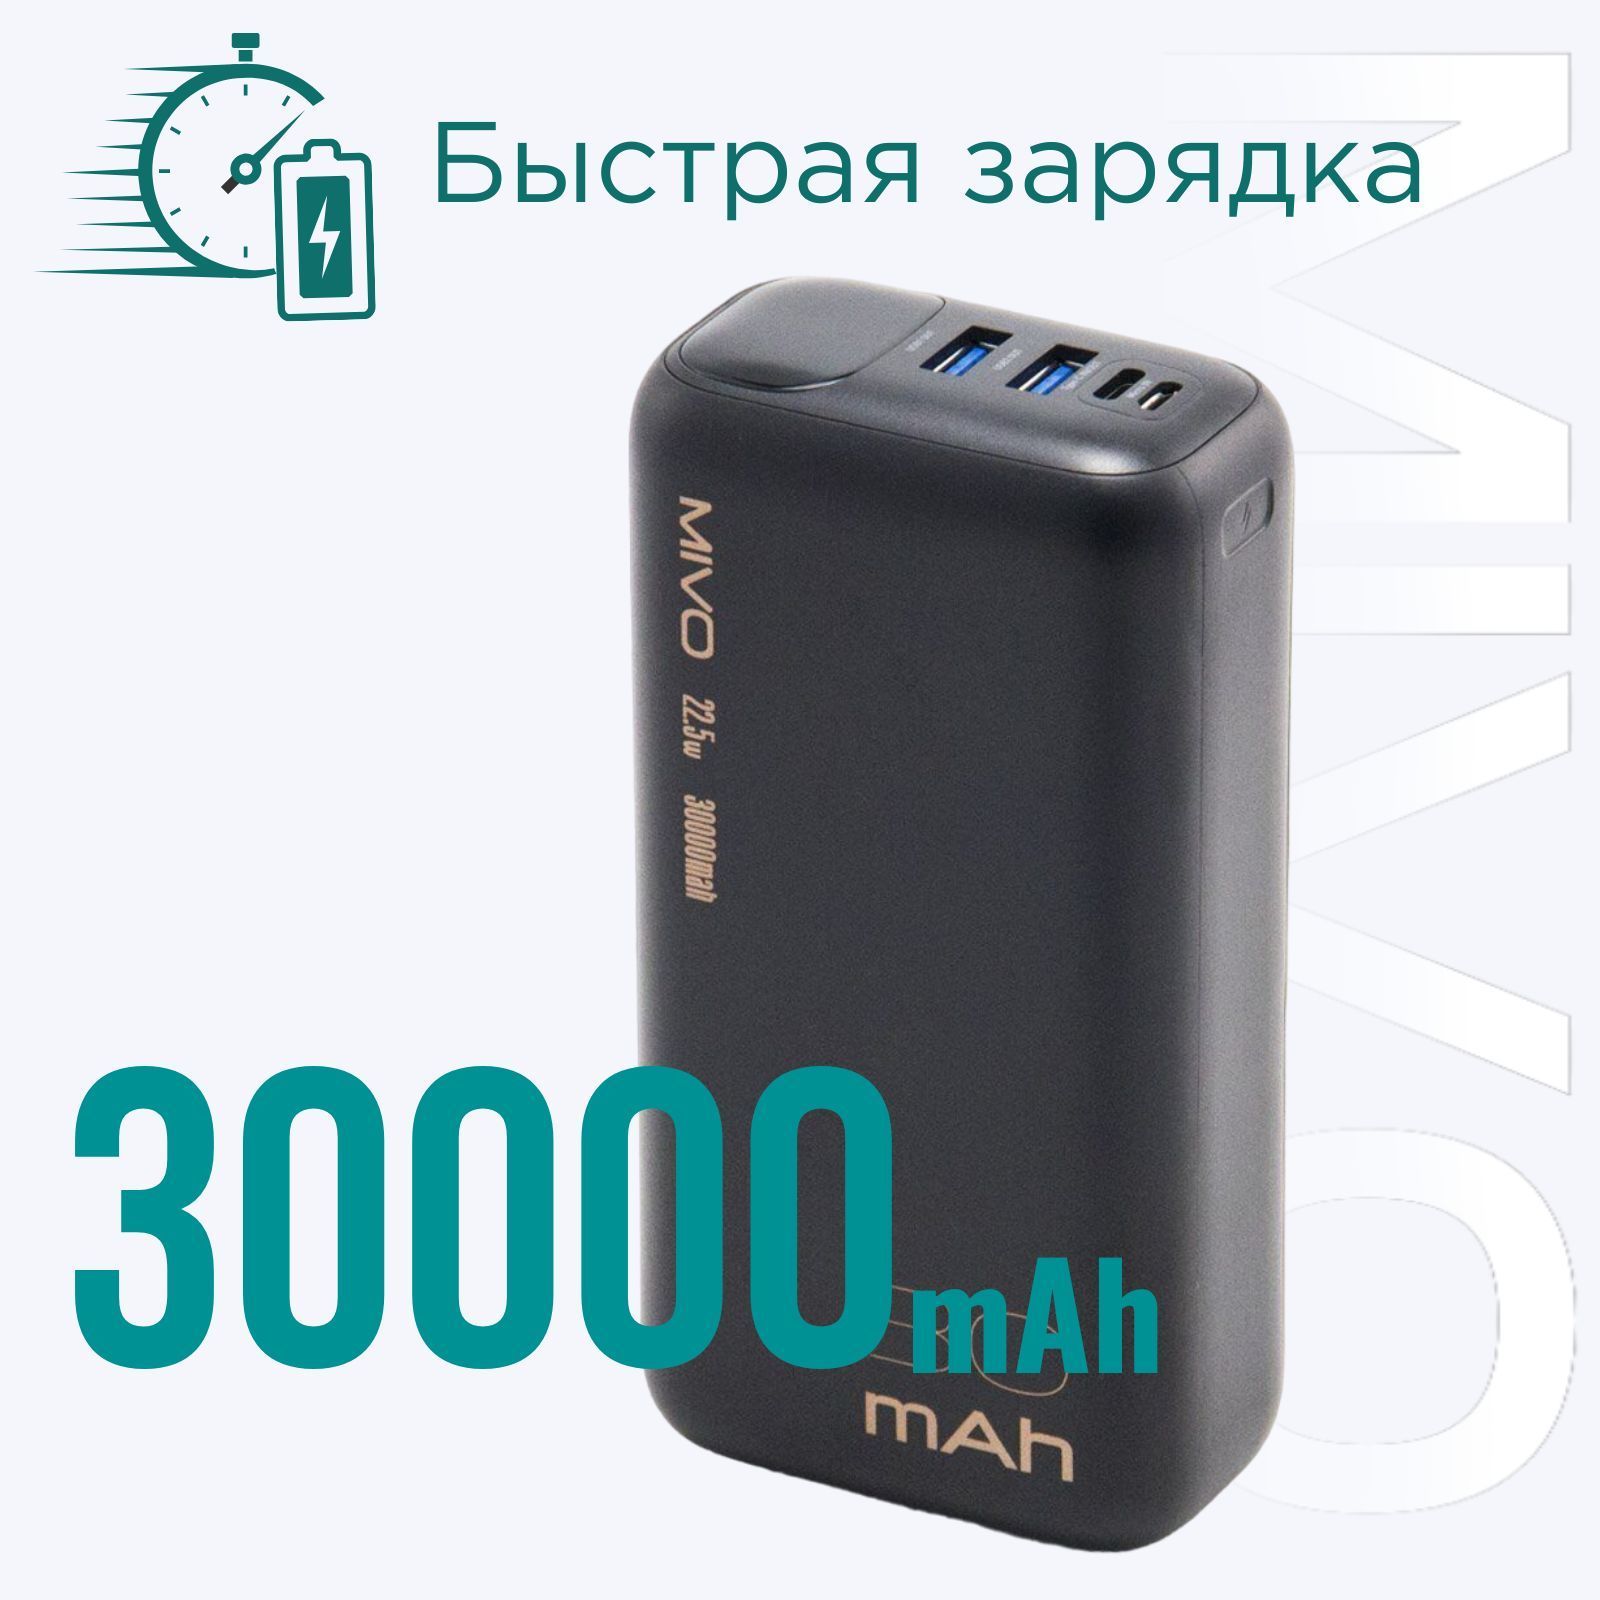 Большой и быстрый. Высокоемкий внешний аккумулятор Mivo MB-308Q - это батарея резервного питания для всевозможных мобильных устройств, предназначенная для длительного автономного использования. Быстро зарядит даже в ноль разряженное устройство.